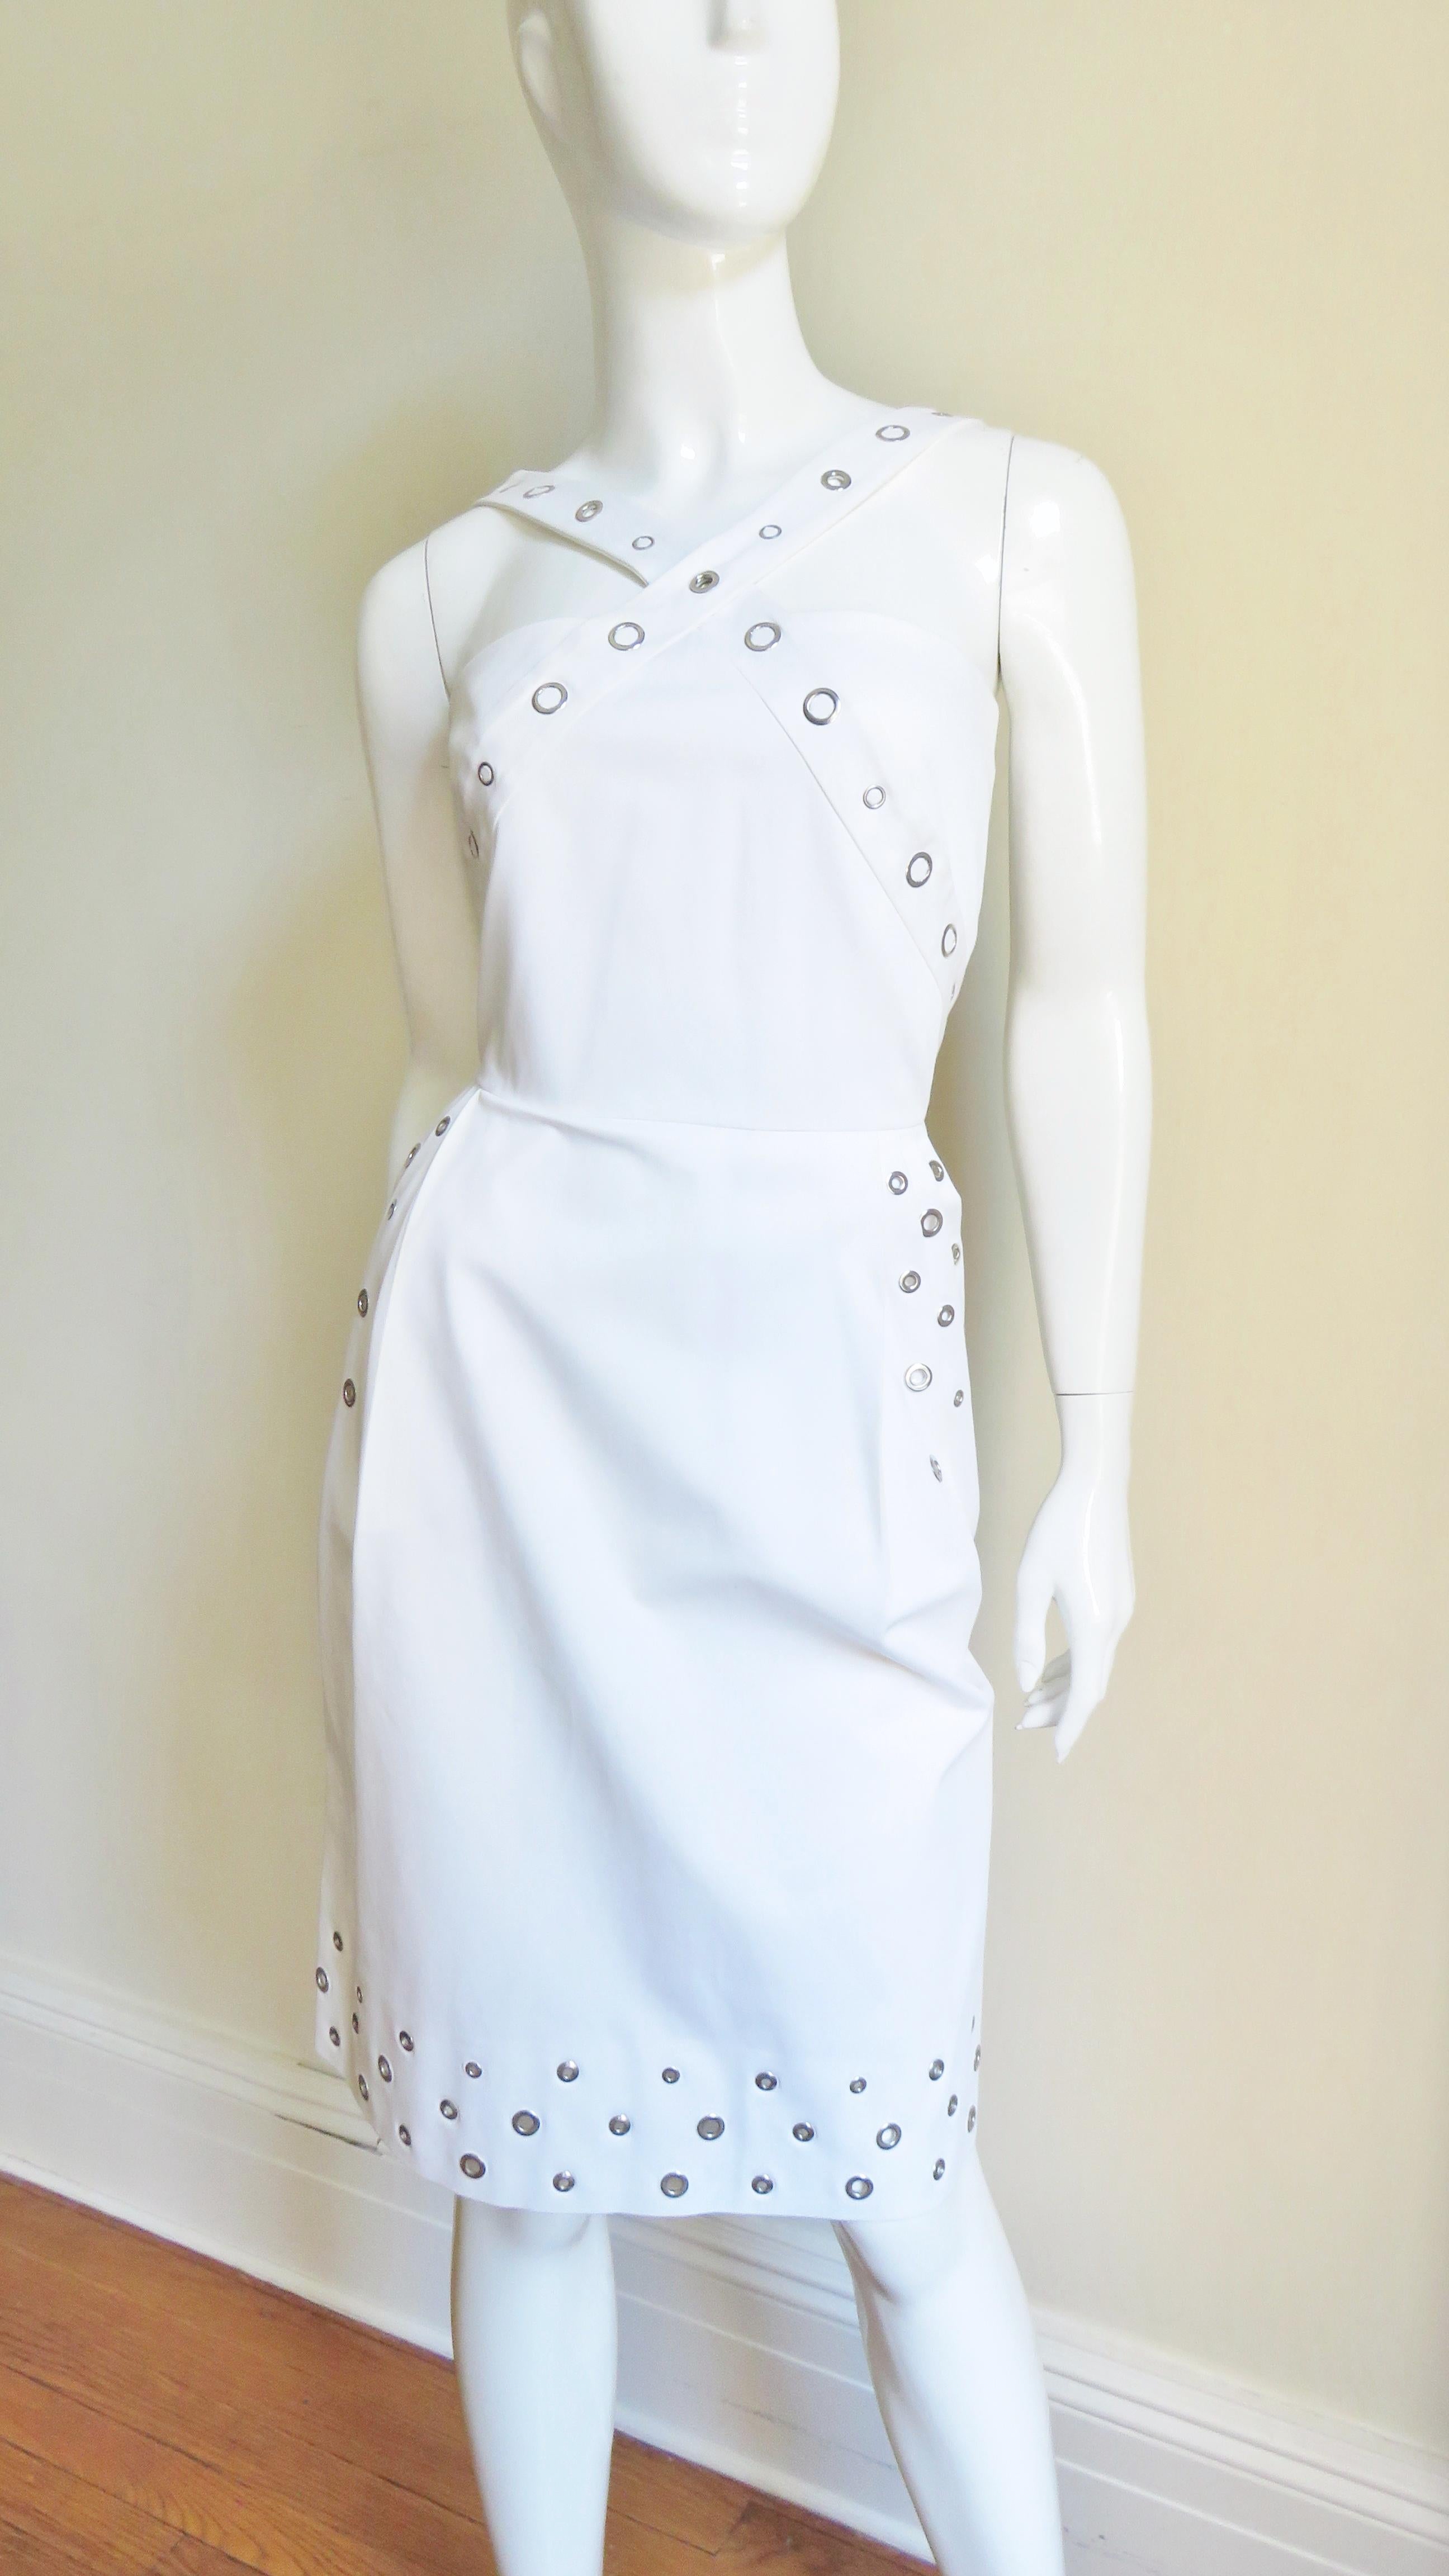 Une superbe robe blanche en coton avec un peu de stretch de Jean Paul Gaultier. Le corsage a des bretelles qui se croisent devant et derrière et la jupe droite a des poches sur les hanches. Il y a des œillets de différentes tailles le long des